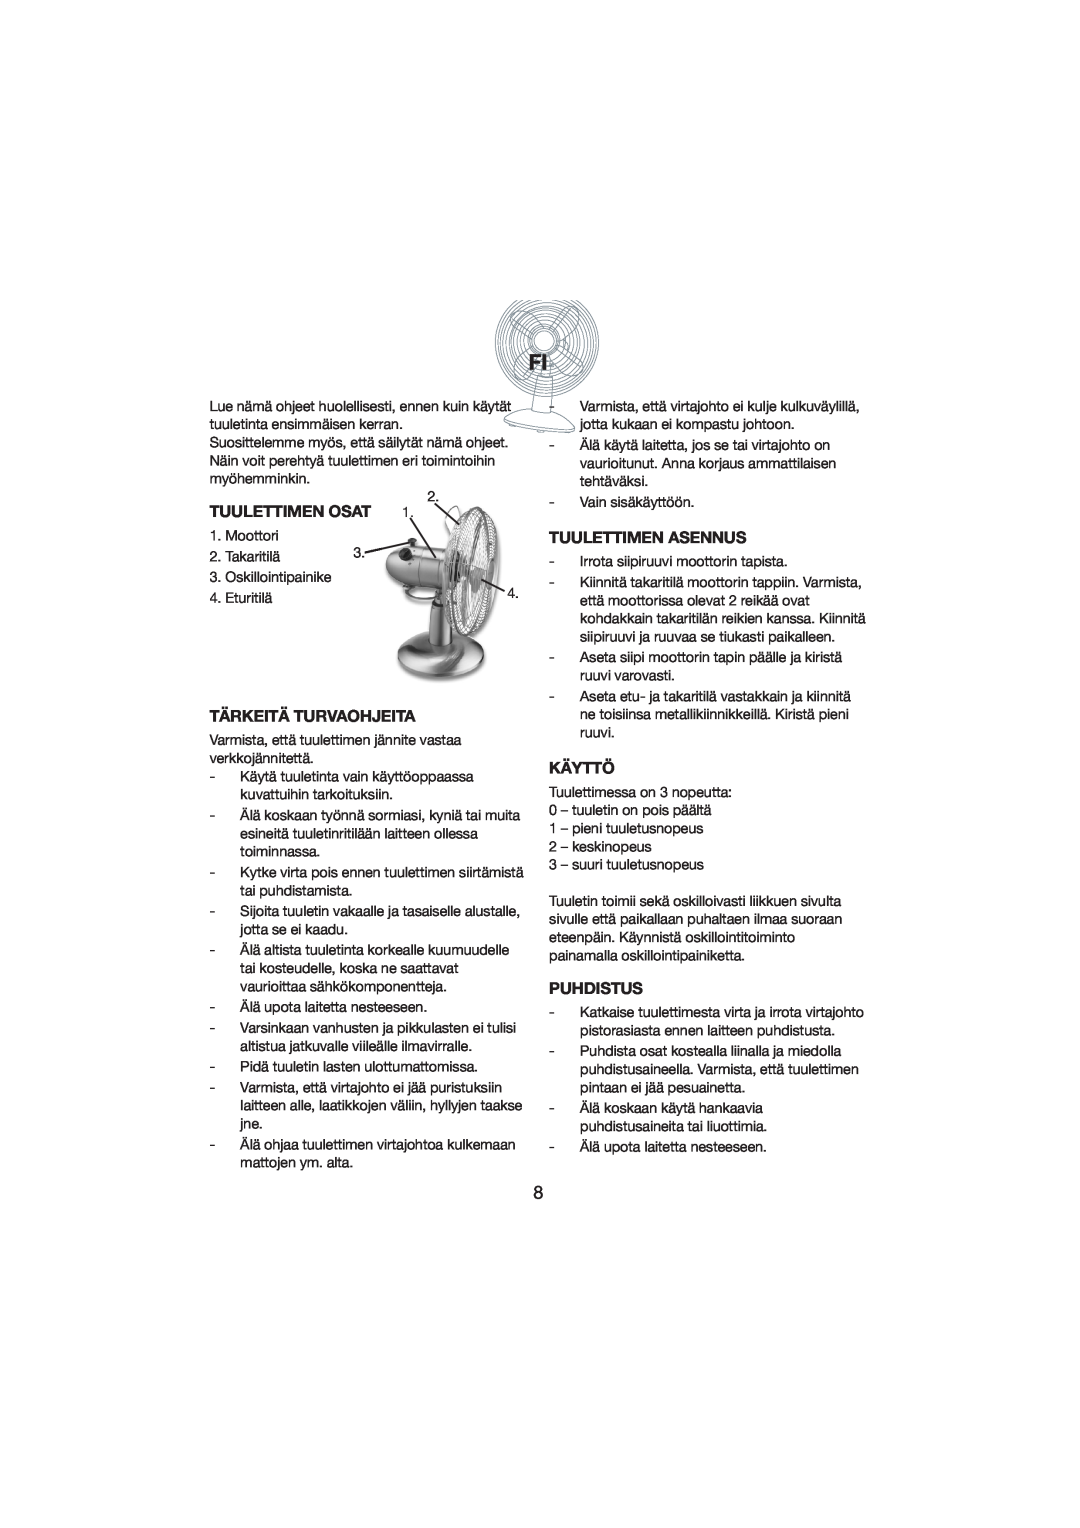 Melissa 271-001 manual Tuulettimen Osat, Tärkeitä Turvaohjeita, Tuulettimen Asennus, Käyttö, Puhdistus 